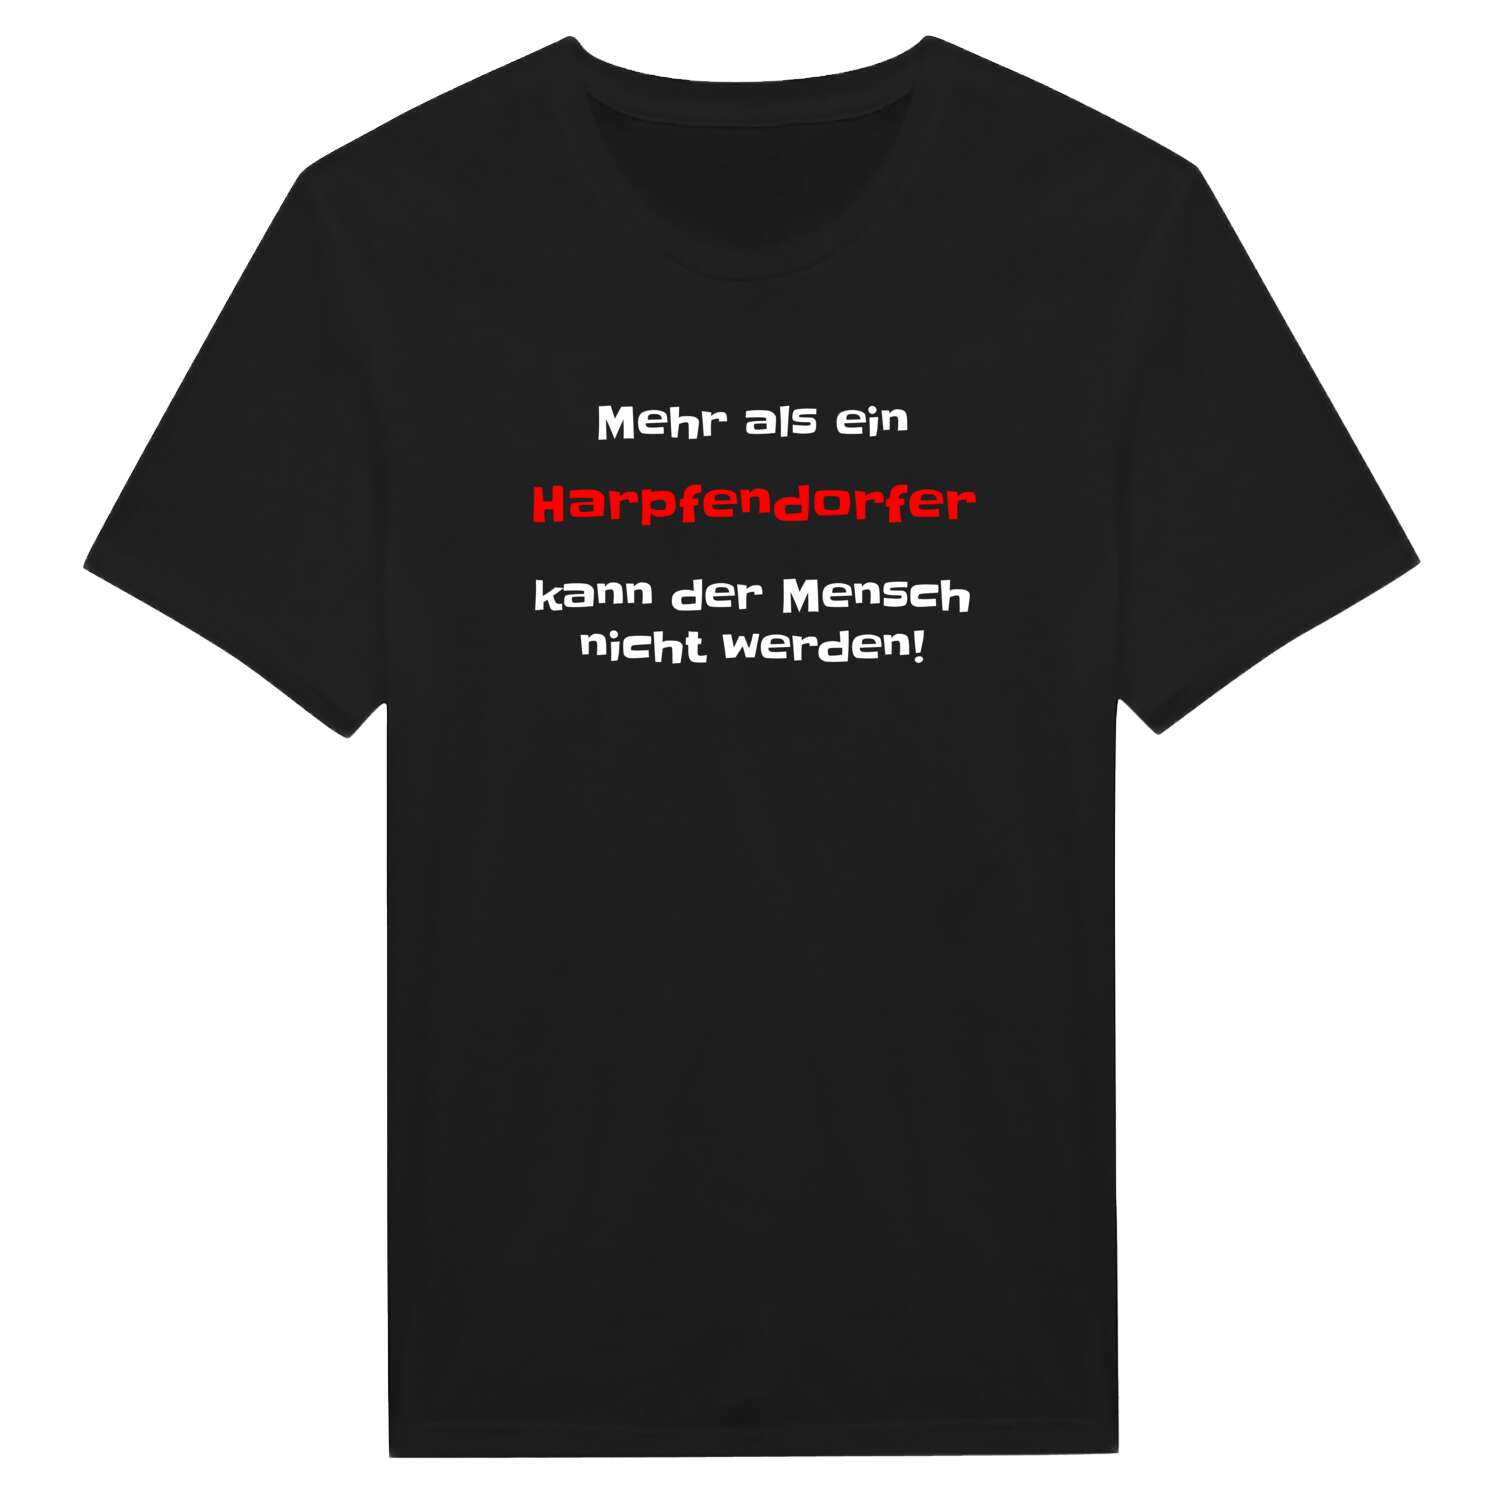 Harpfendorf T-Shirt »Mehr als ein«